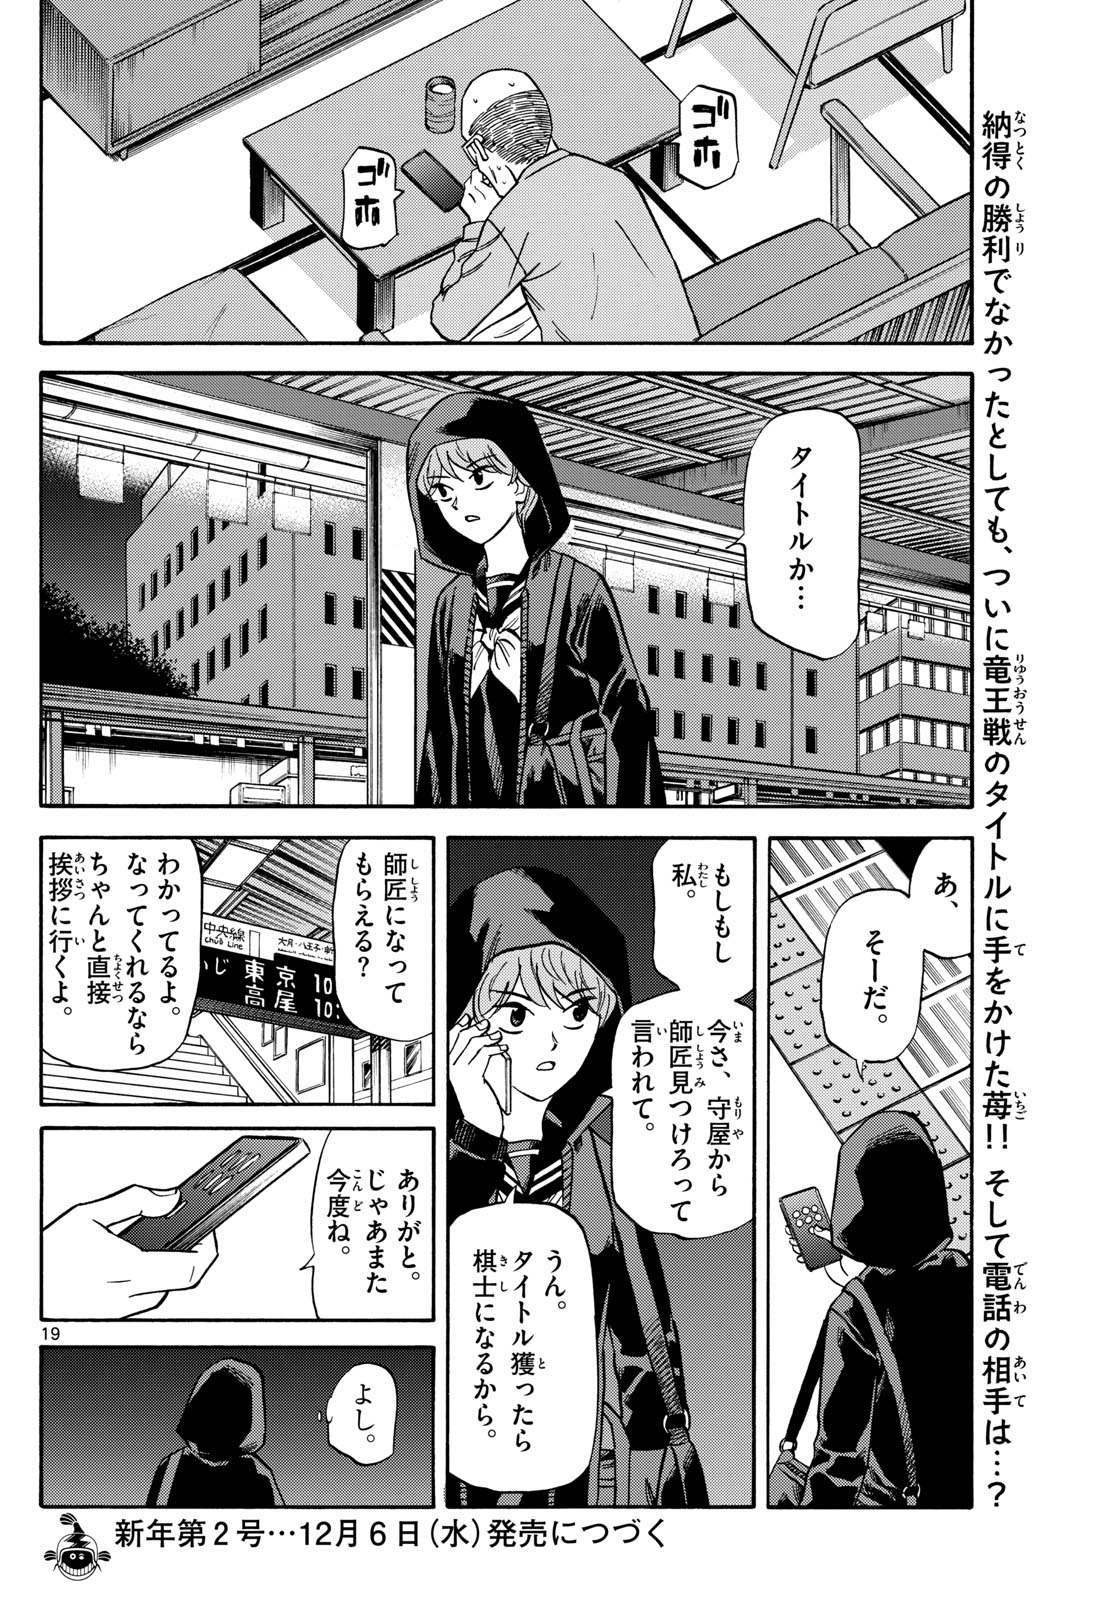 Tatsu to Ichigo - Chapter 170 - Page 19